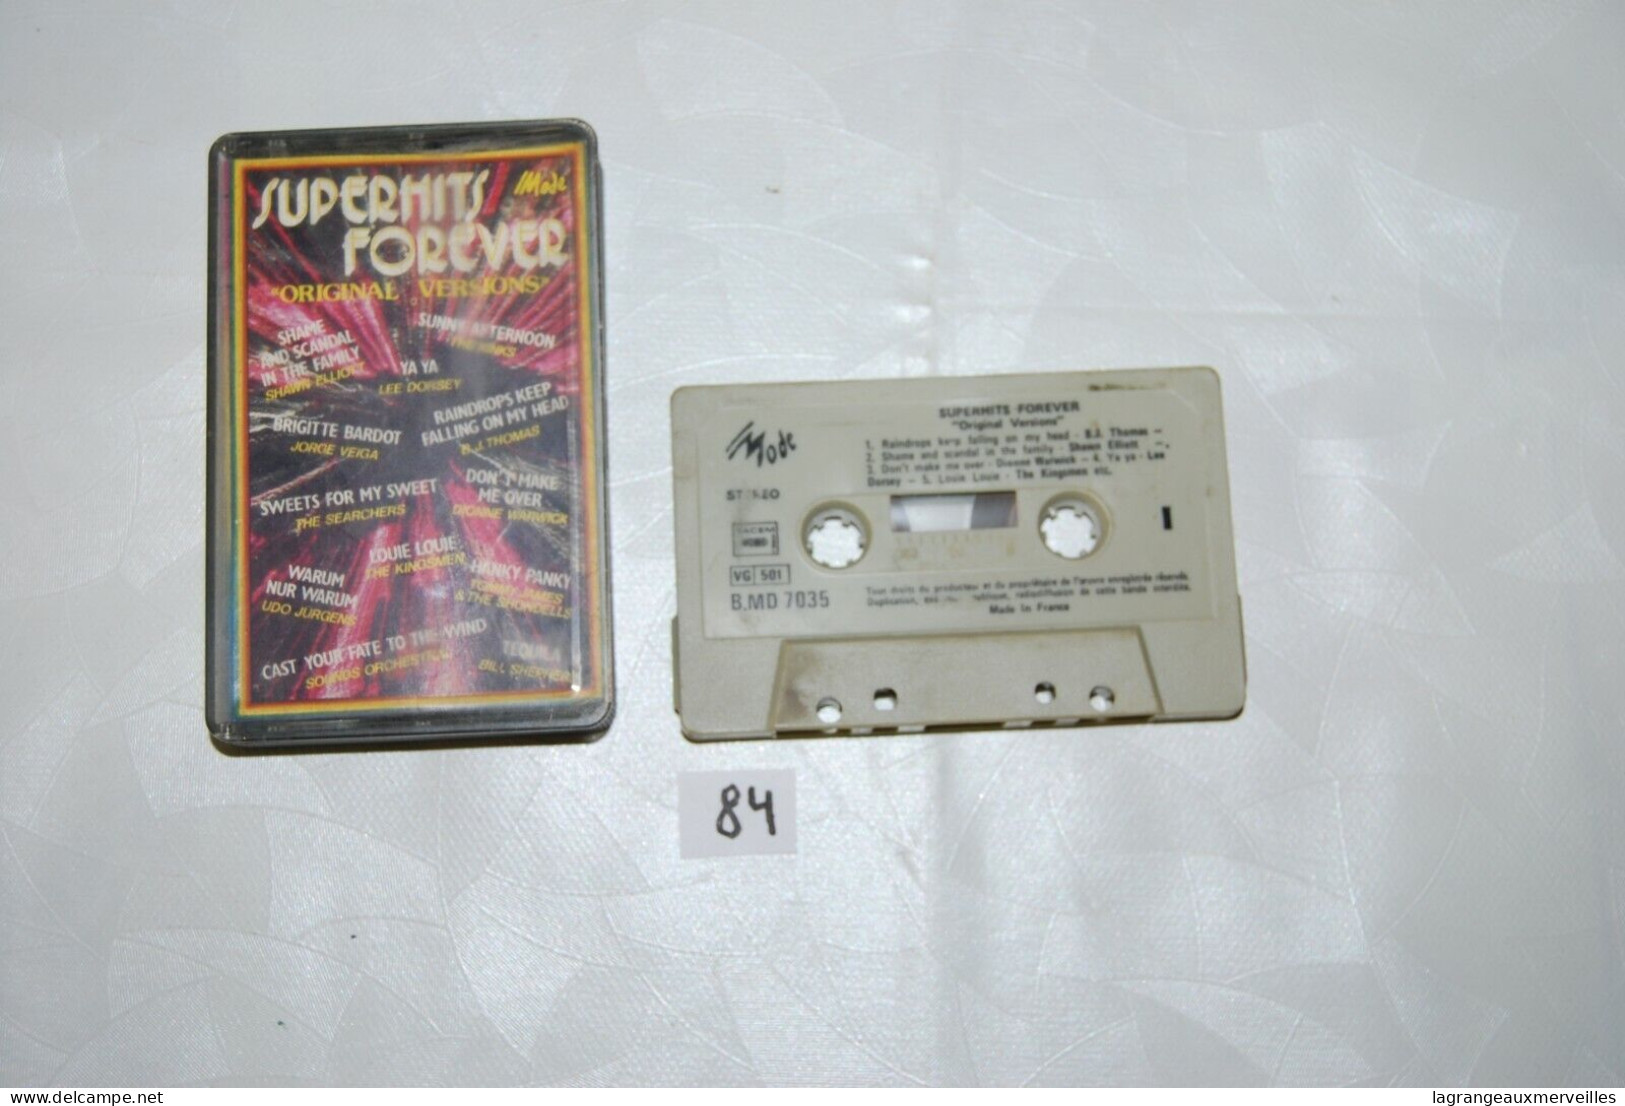 C84 K7 Cassette Audio - Super Hits Forever - Beta Tapes